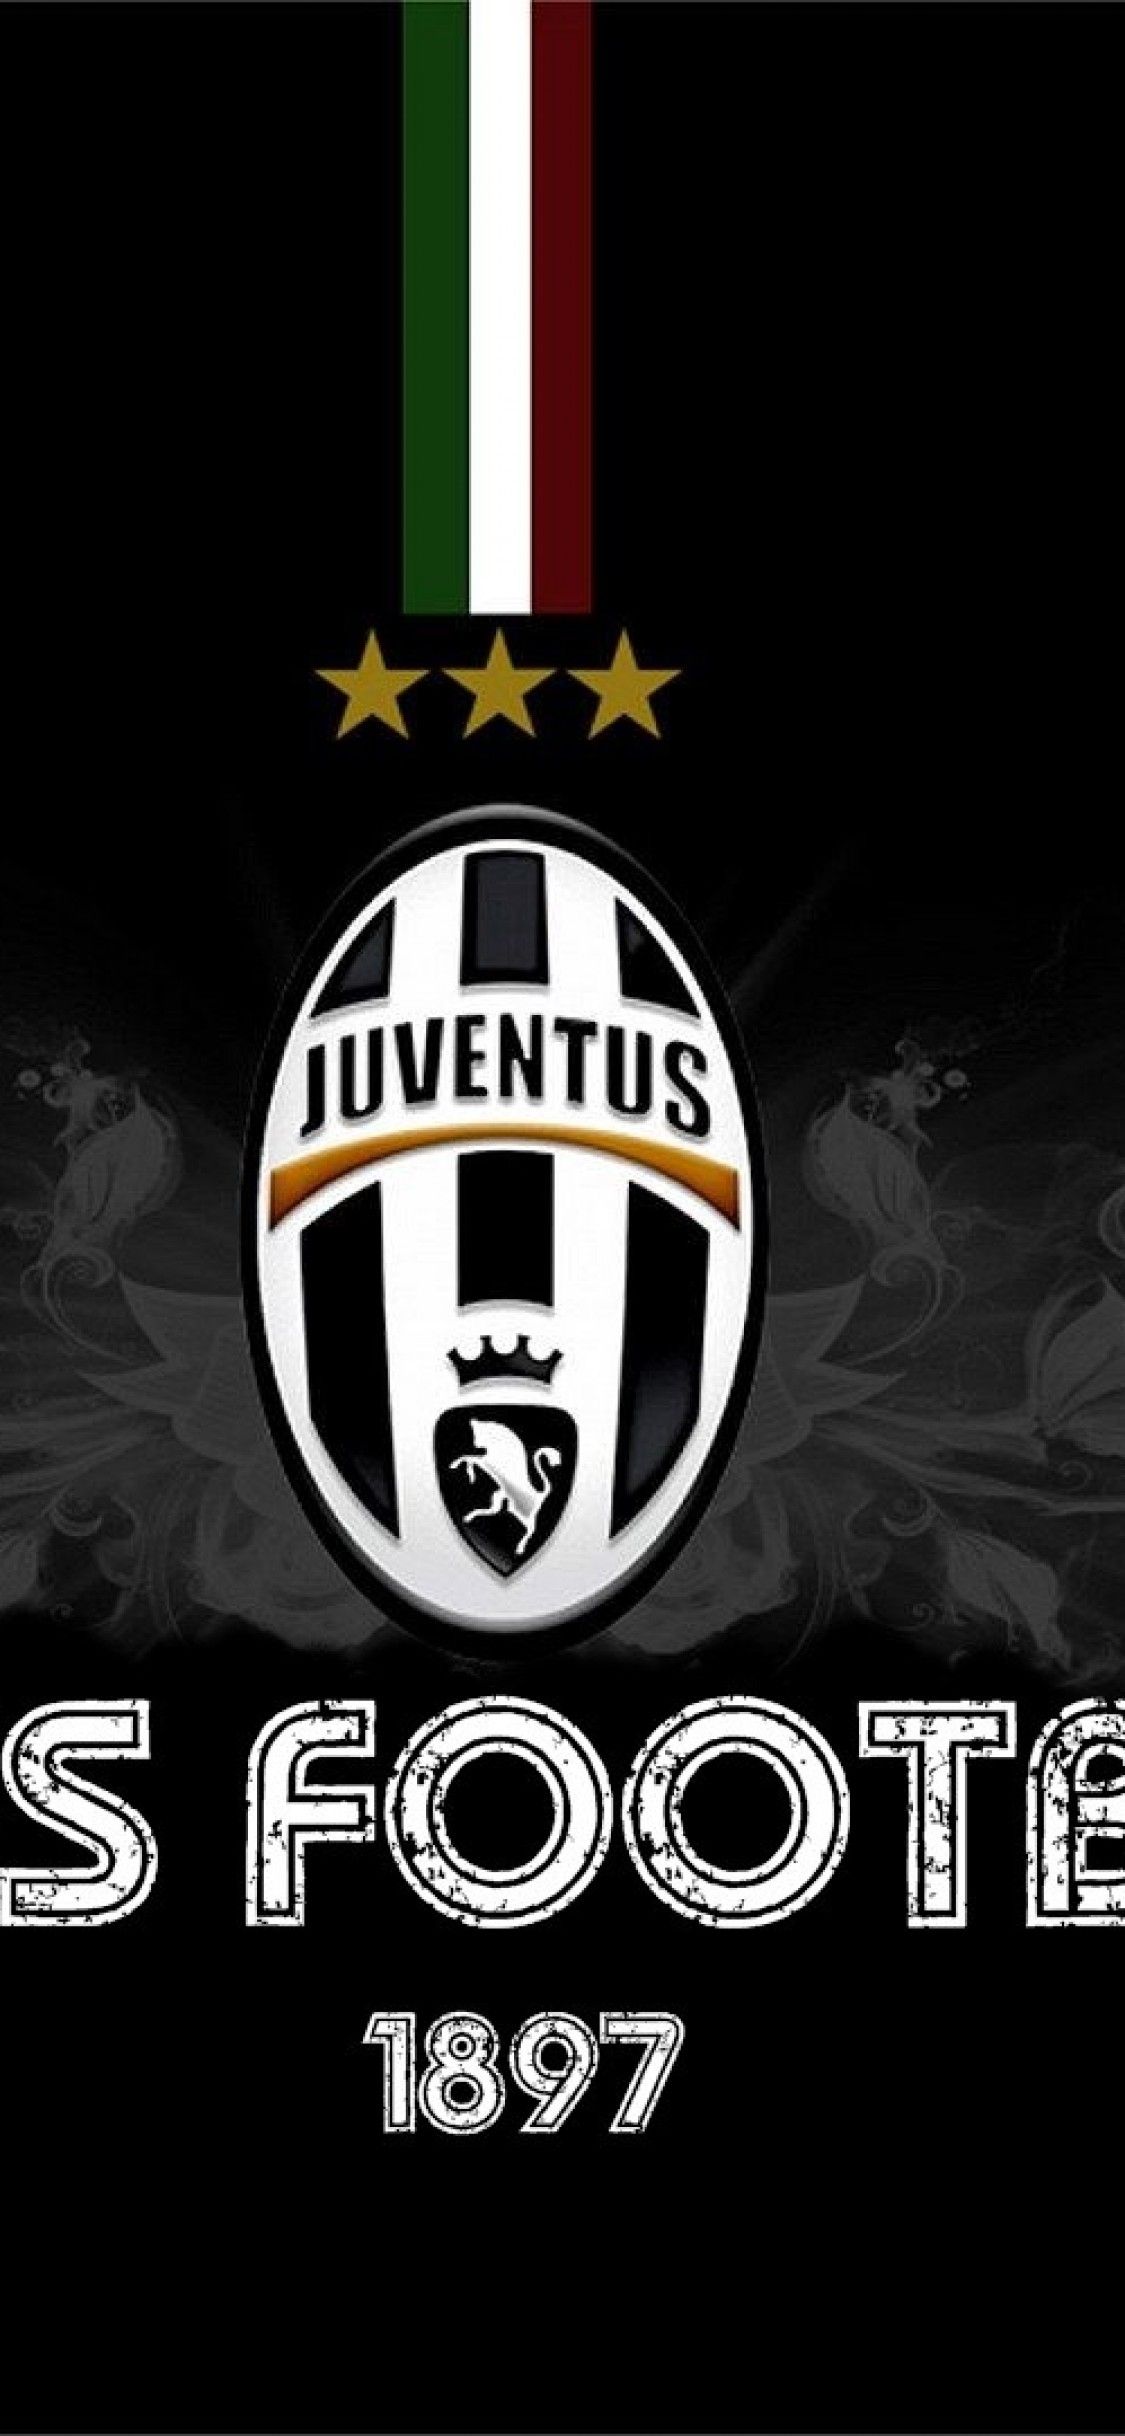 Juventus iPhone X Wallpaper Download